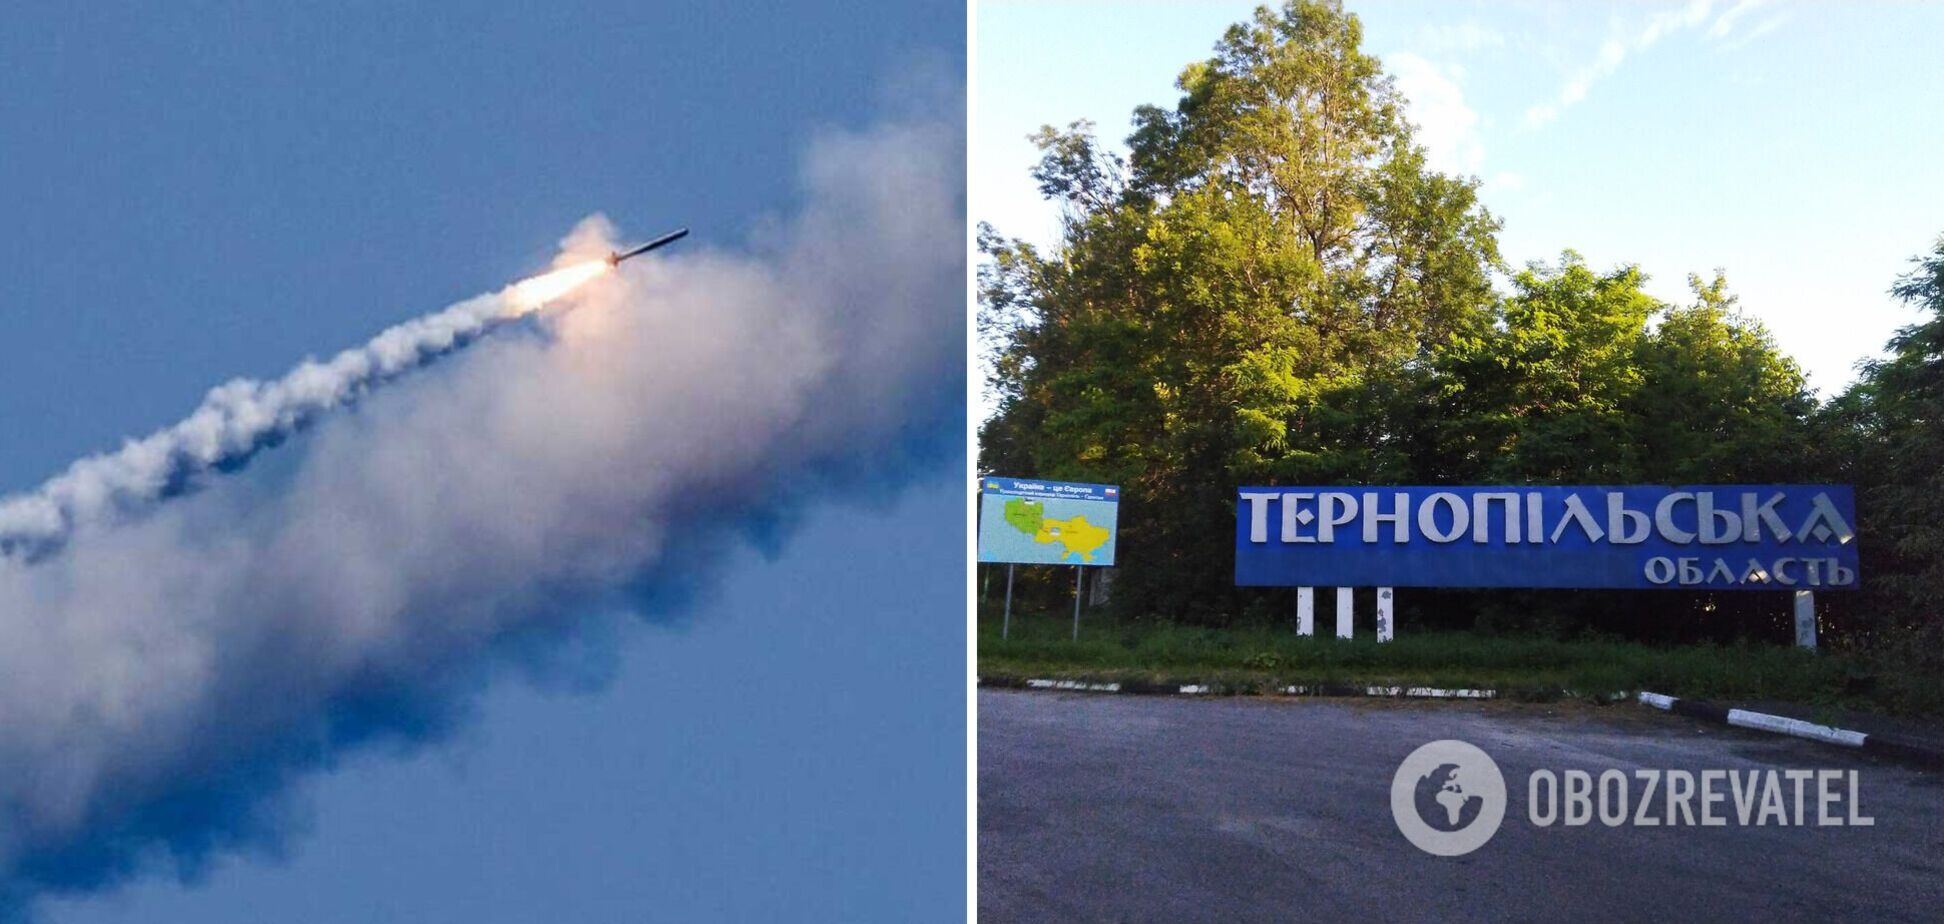 Оккупанты нанесли удар по Тернополю, на месте прилета вспыхнул пожар: есть пострадавшие